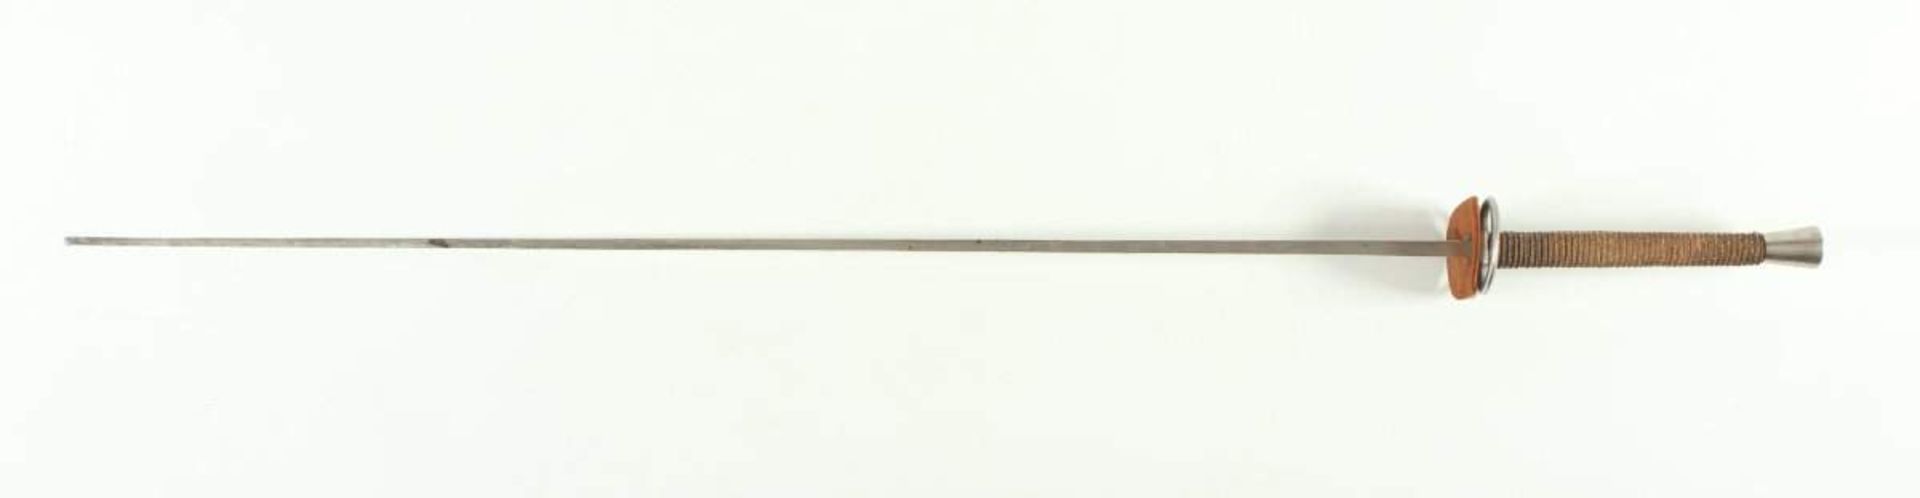 FLORETT, vernickelte Klinge (Hersteller Clemen und Jung, Solingen), L 103 - Bild 2 aus 3